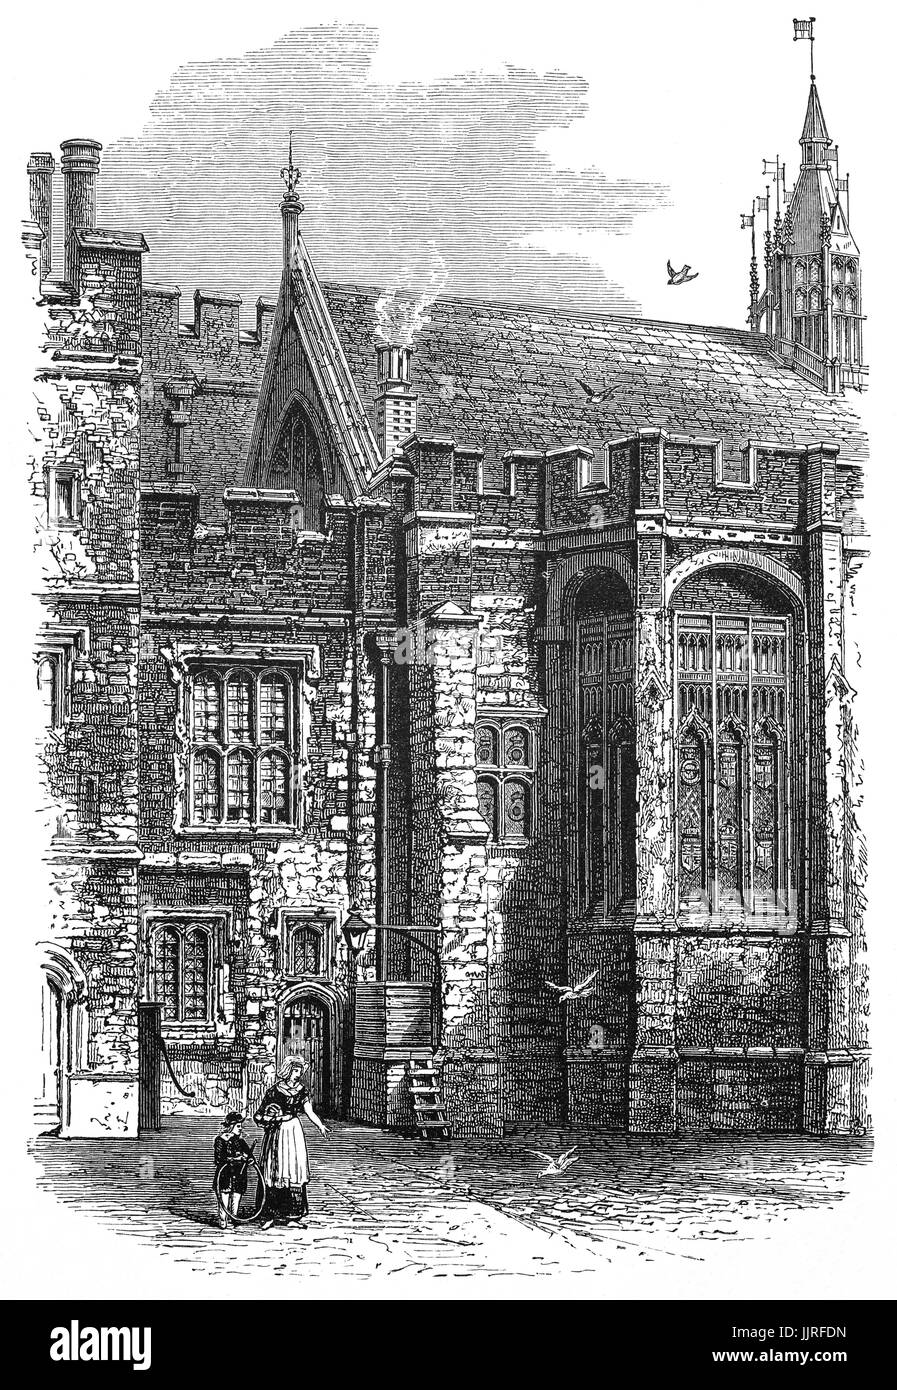 1870 : Le College Hall au Eton College, un internat pour garçons indépendante fondée en 1440 par le Roi Henry VI comme 'le King's College Notre Dame de l'Eton en plus Wyndsor', Eton, Berkshire, près de Windsor, en Angleterre. Banque D'Images